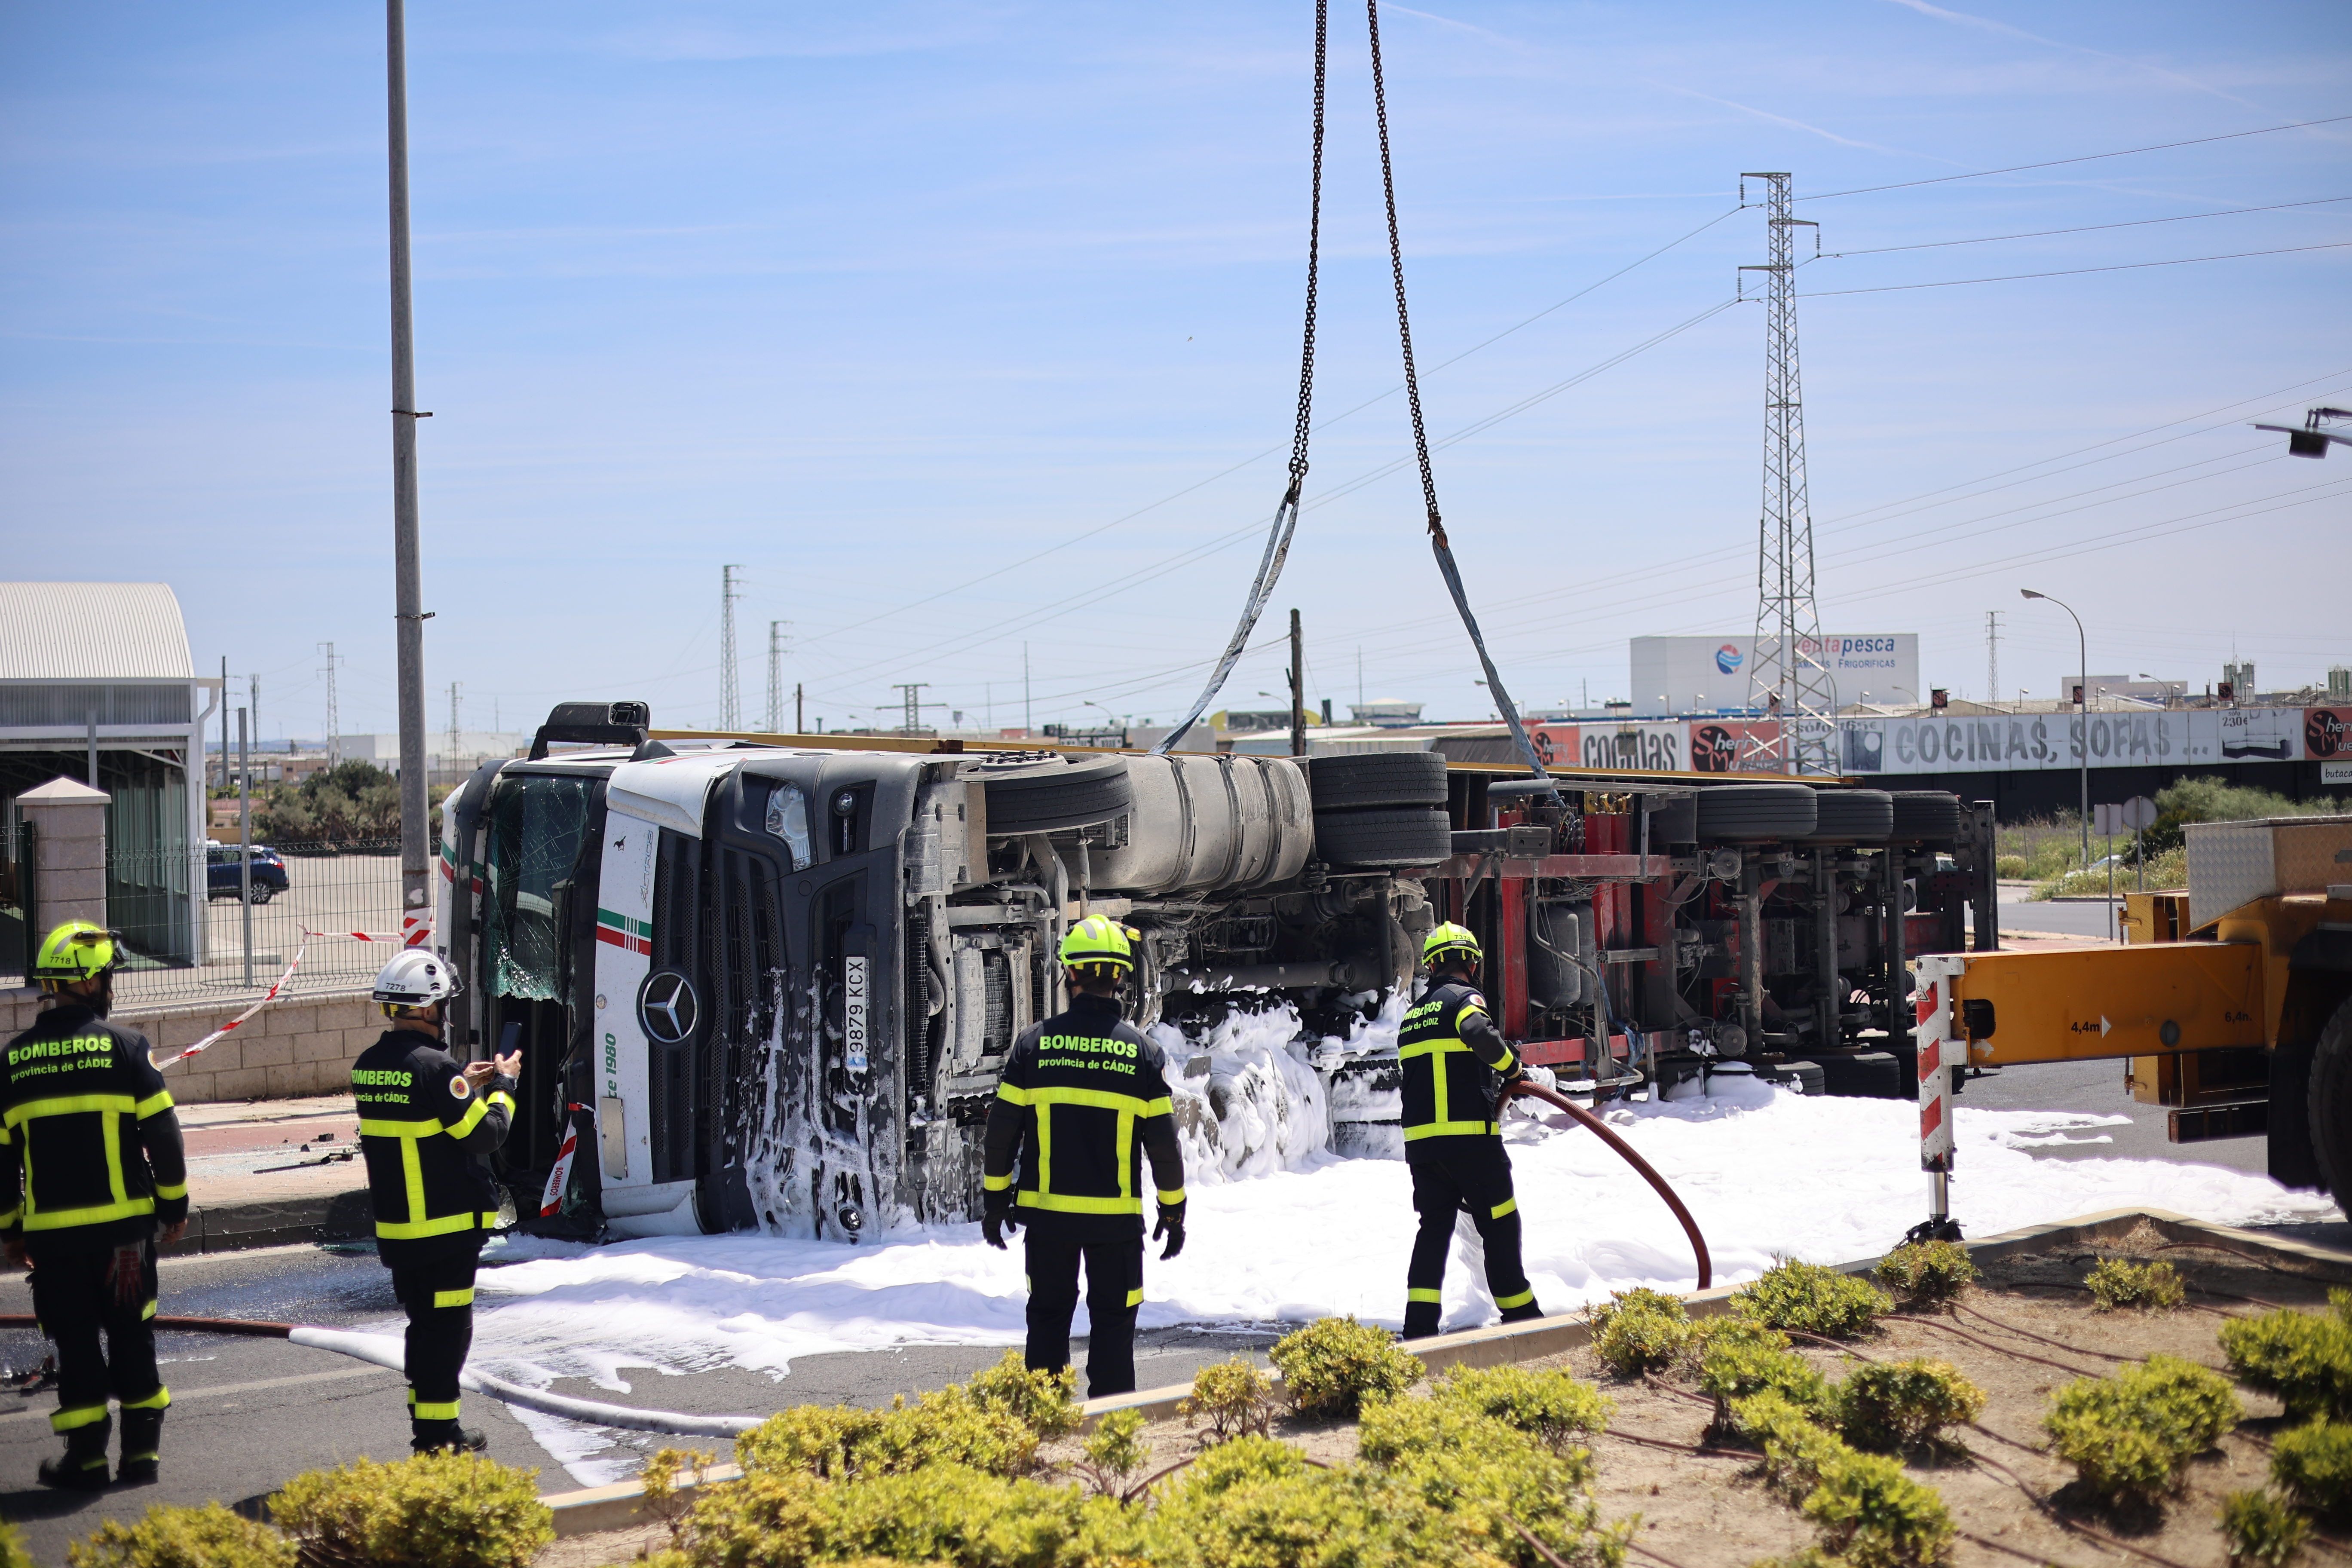 Bomberos intervienen tras volcar un camión en El Puerto.